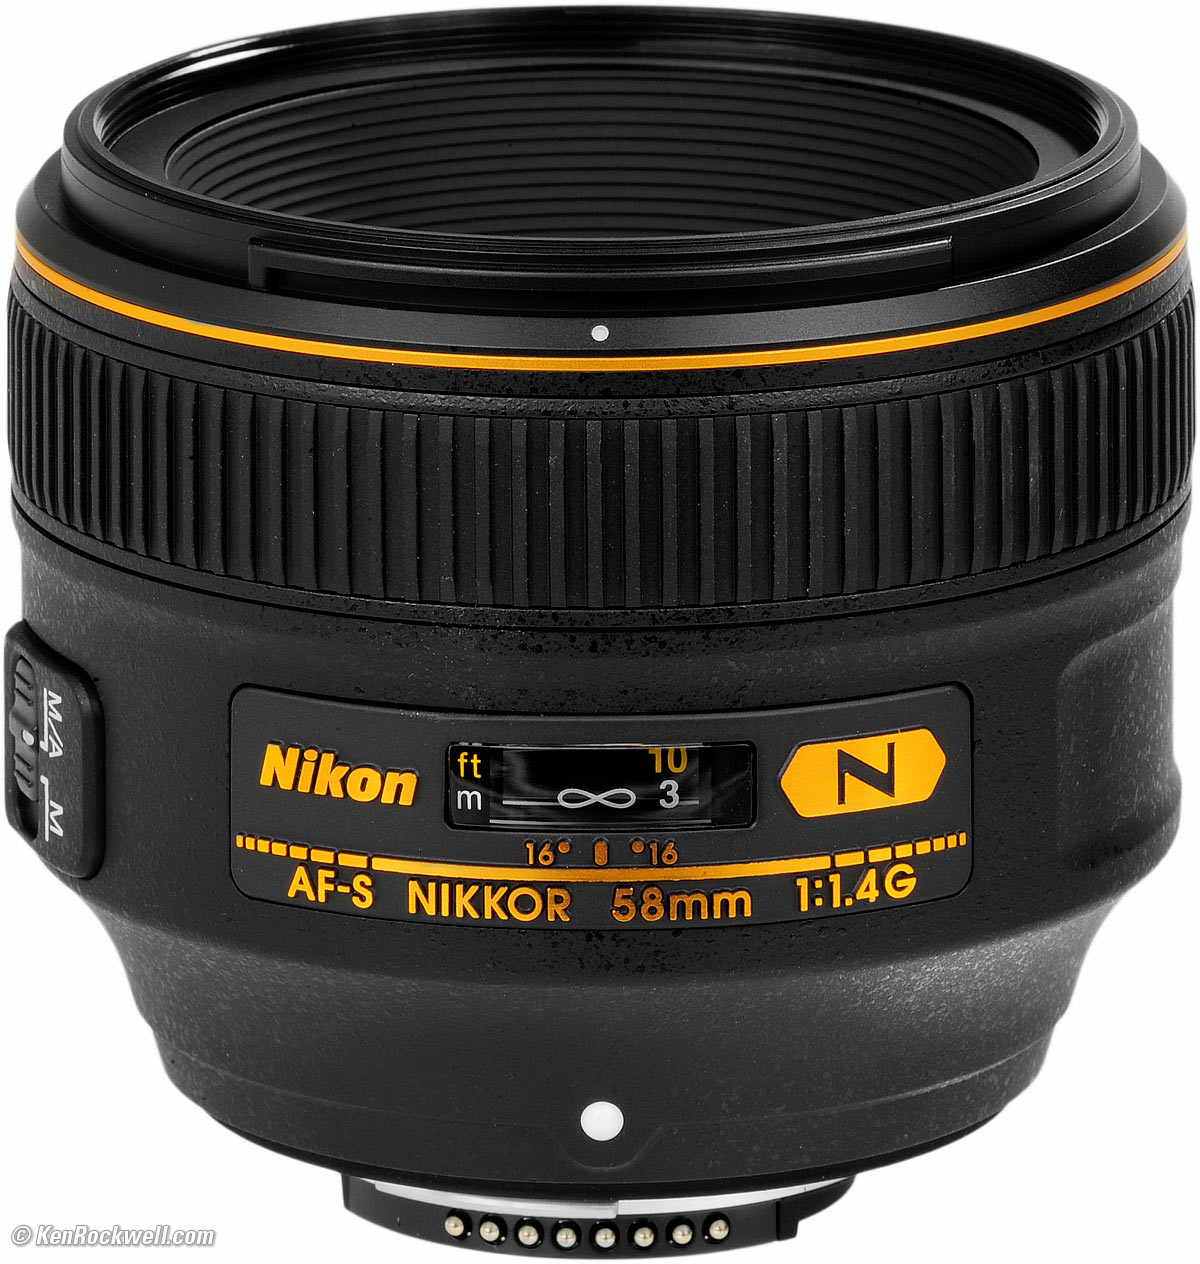 Nikon 58mm f/1.4 G